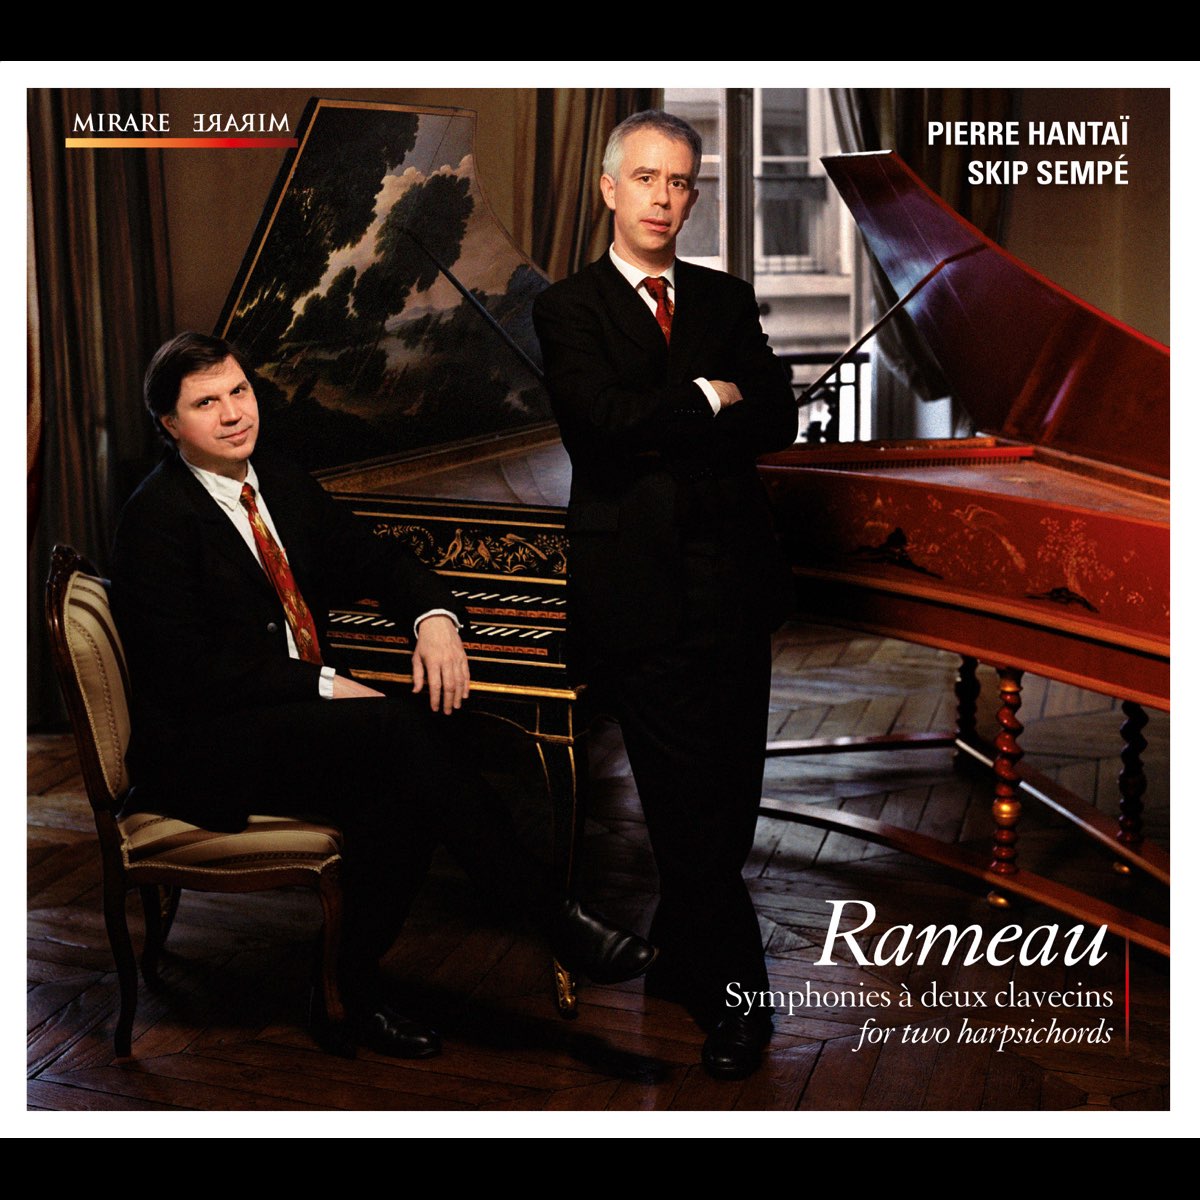 Rameau: Symphonies for two harpsichords / à deux clavecins - Album by Pierre  Hantaï & Skip Sempé - Apple Music